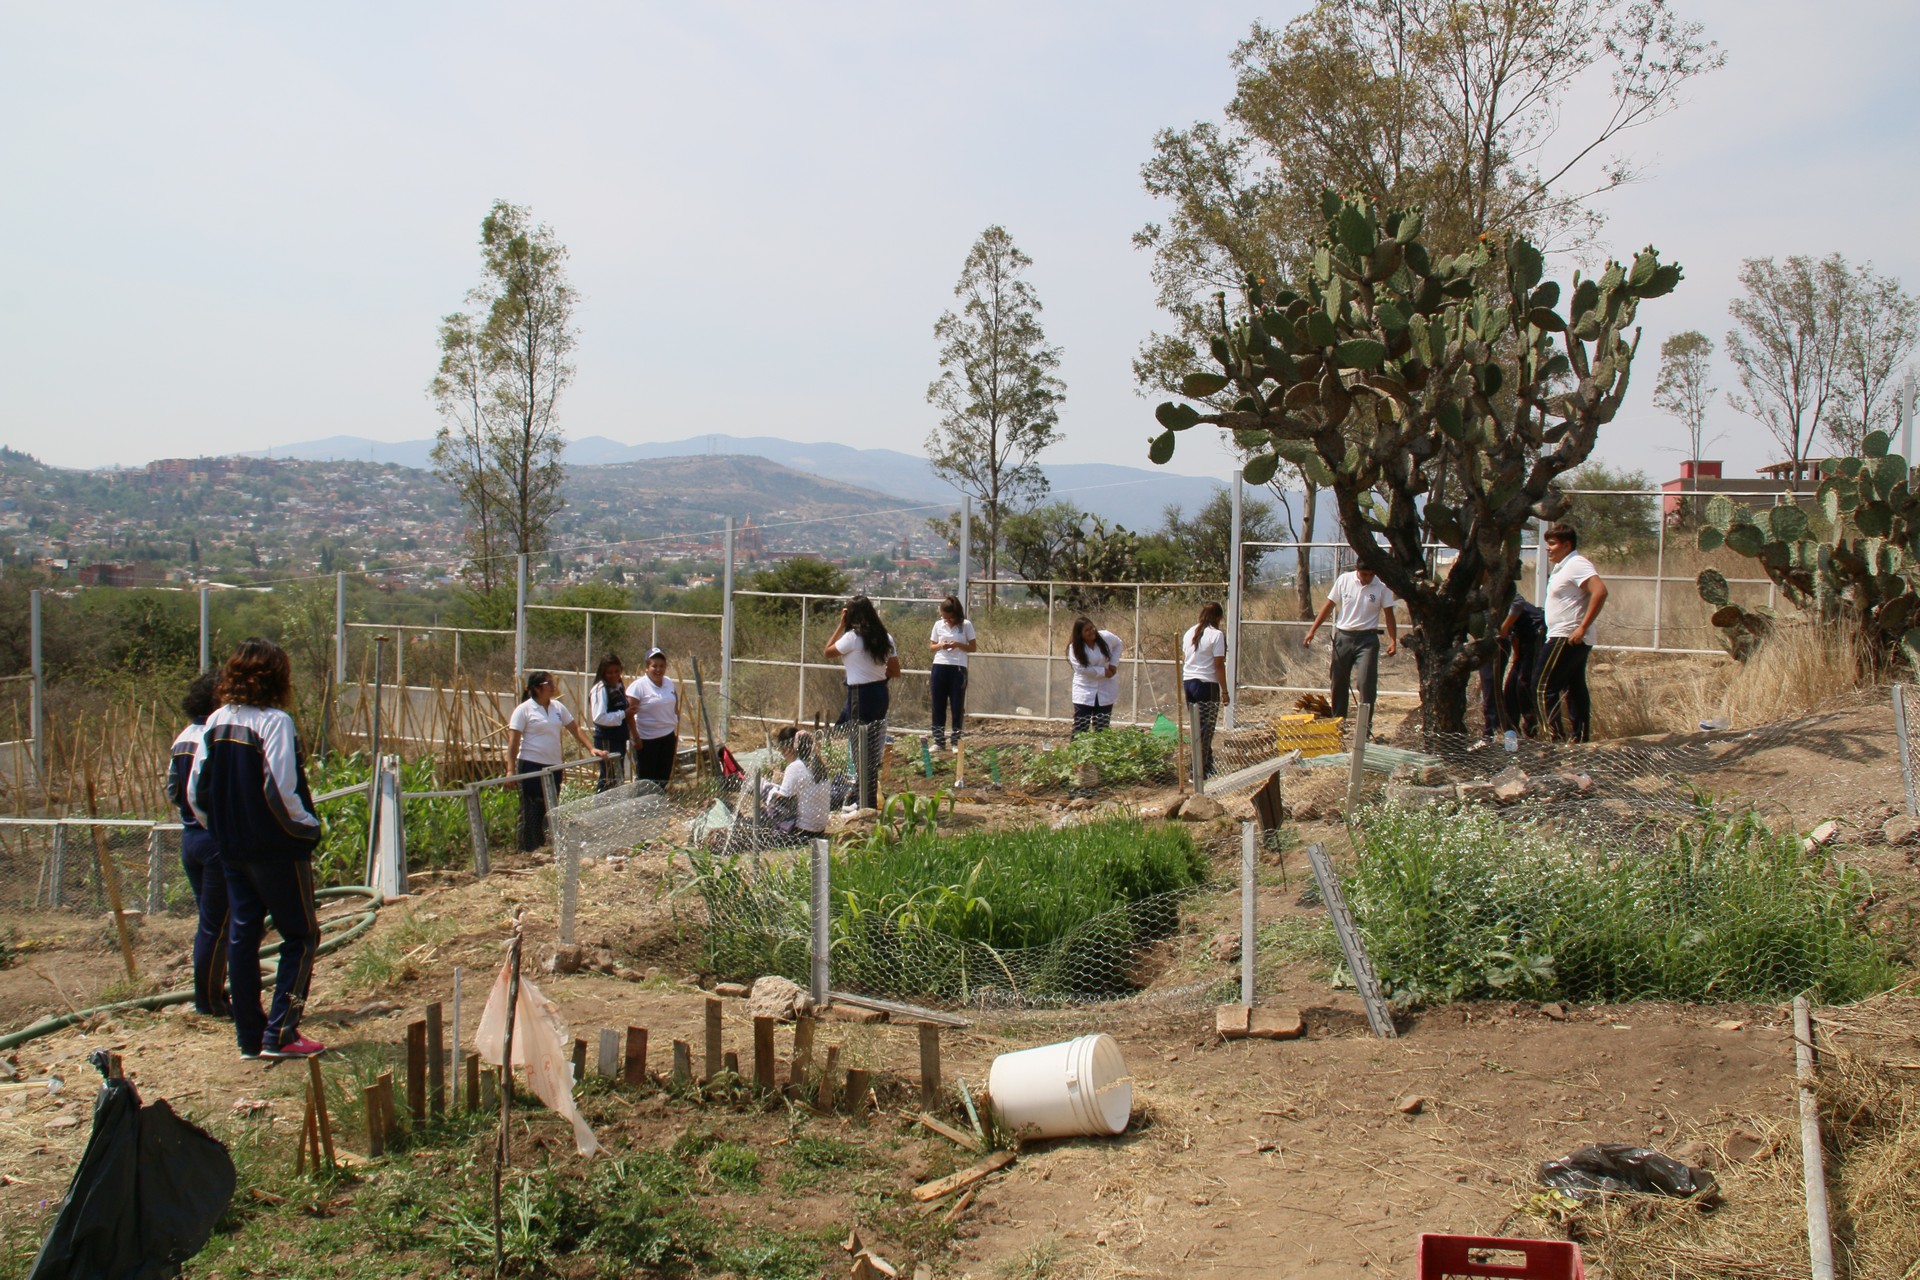 Los estudiantes trabajan en los jardines escolares cercanos.